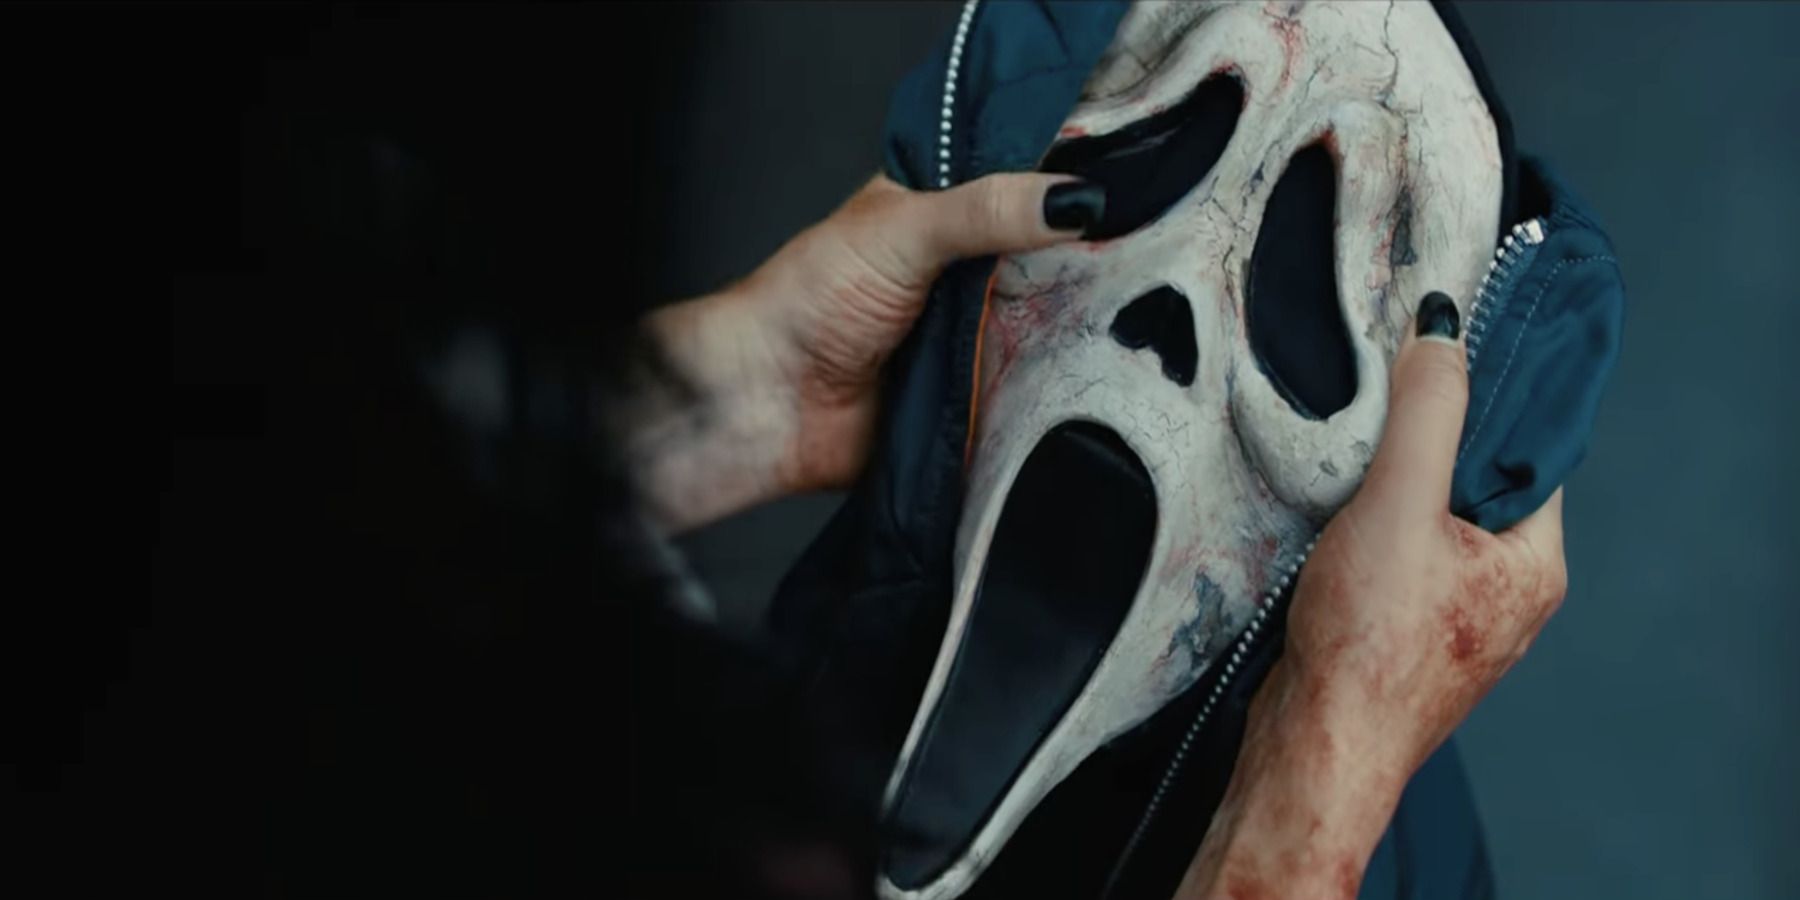 Who Dies In Scream 6?